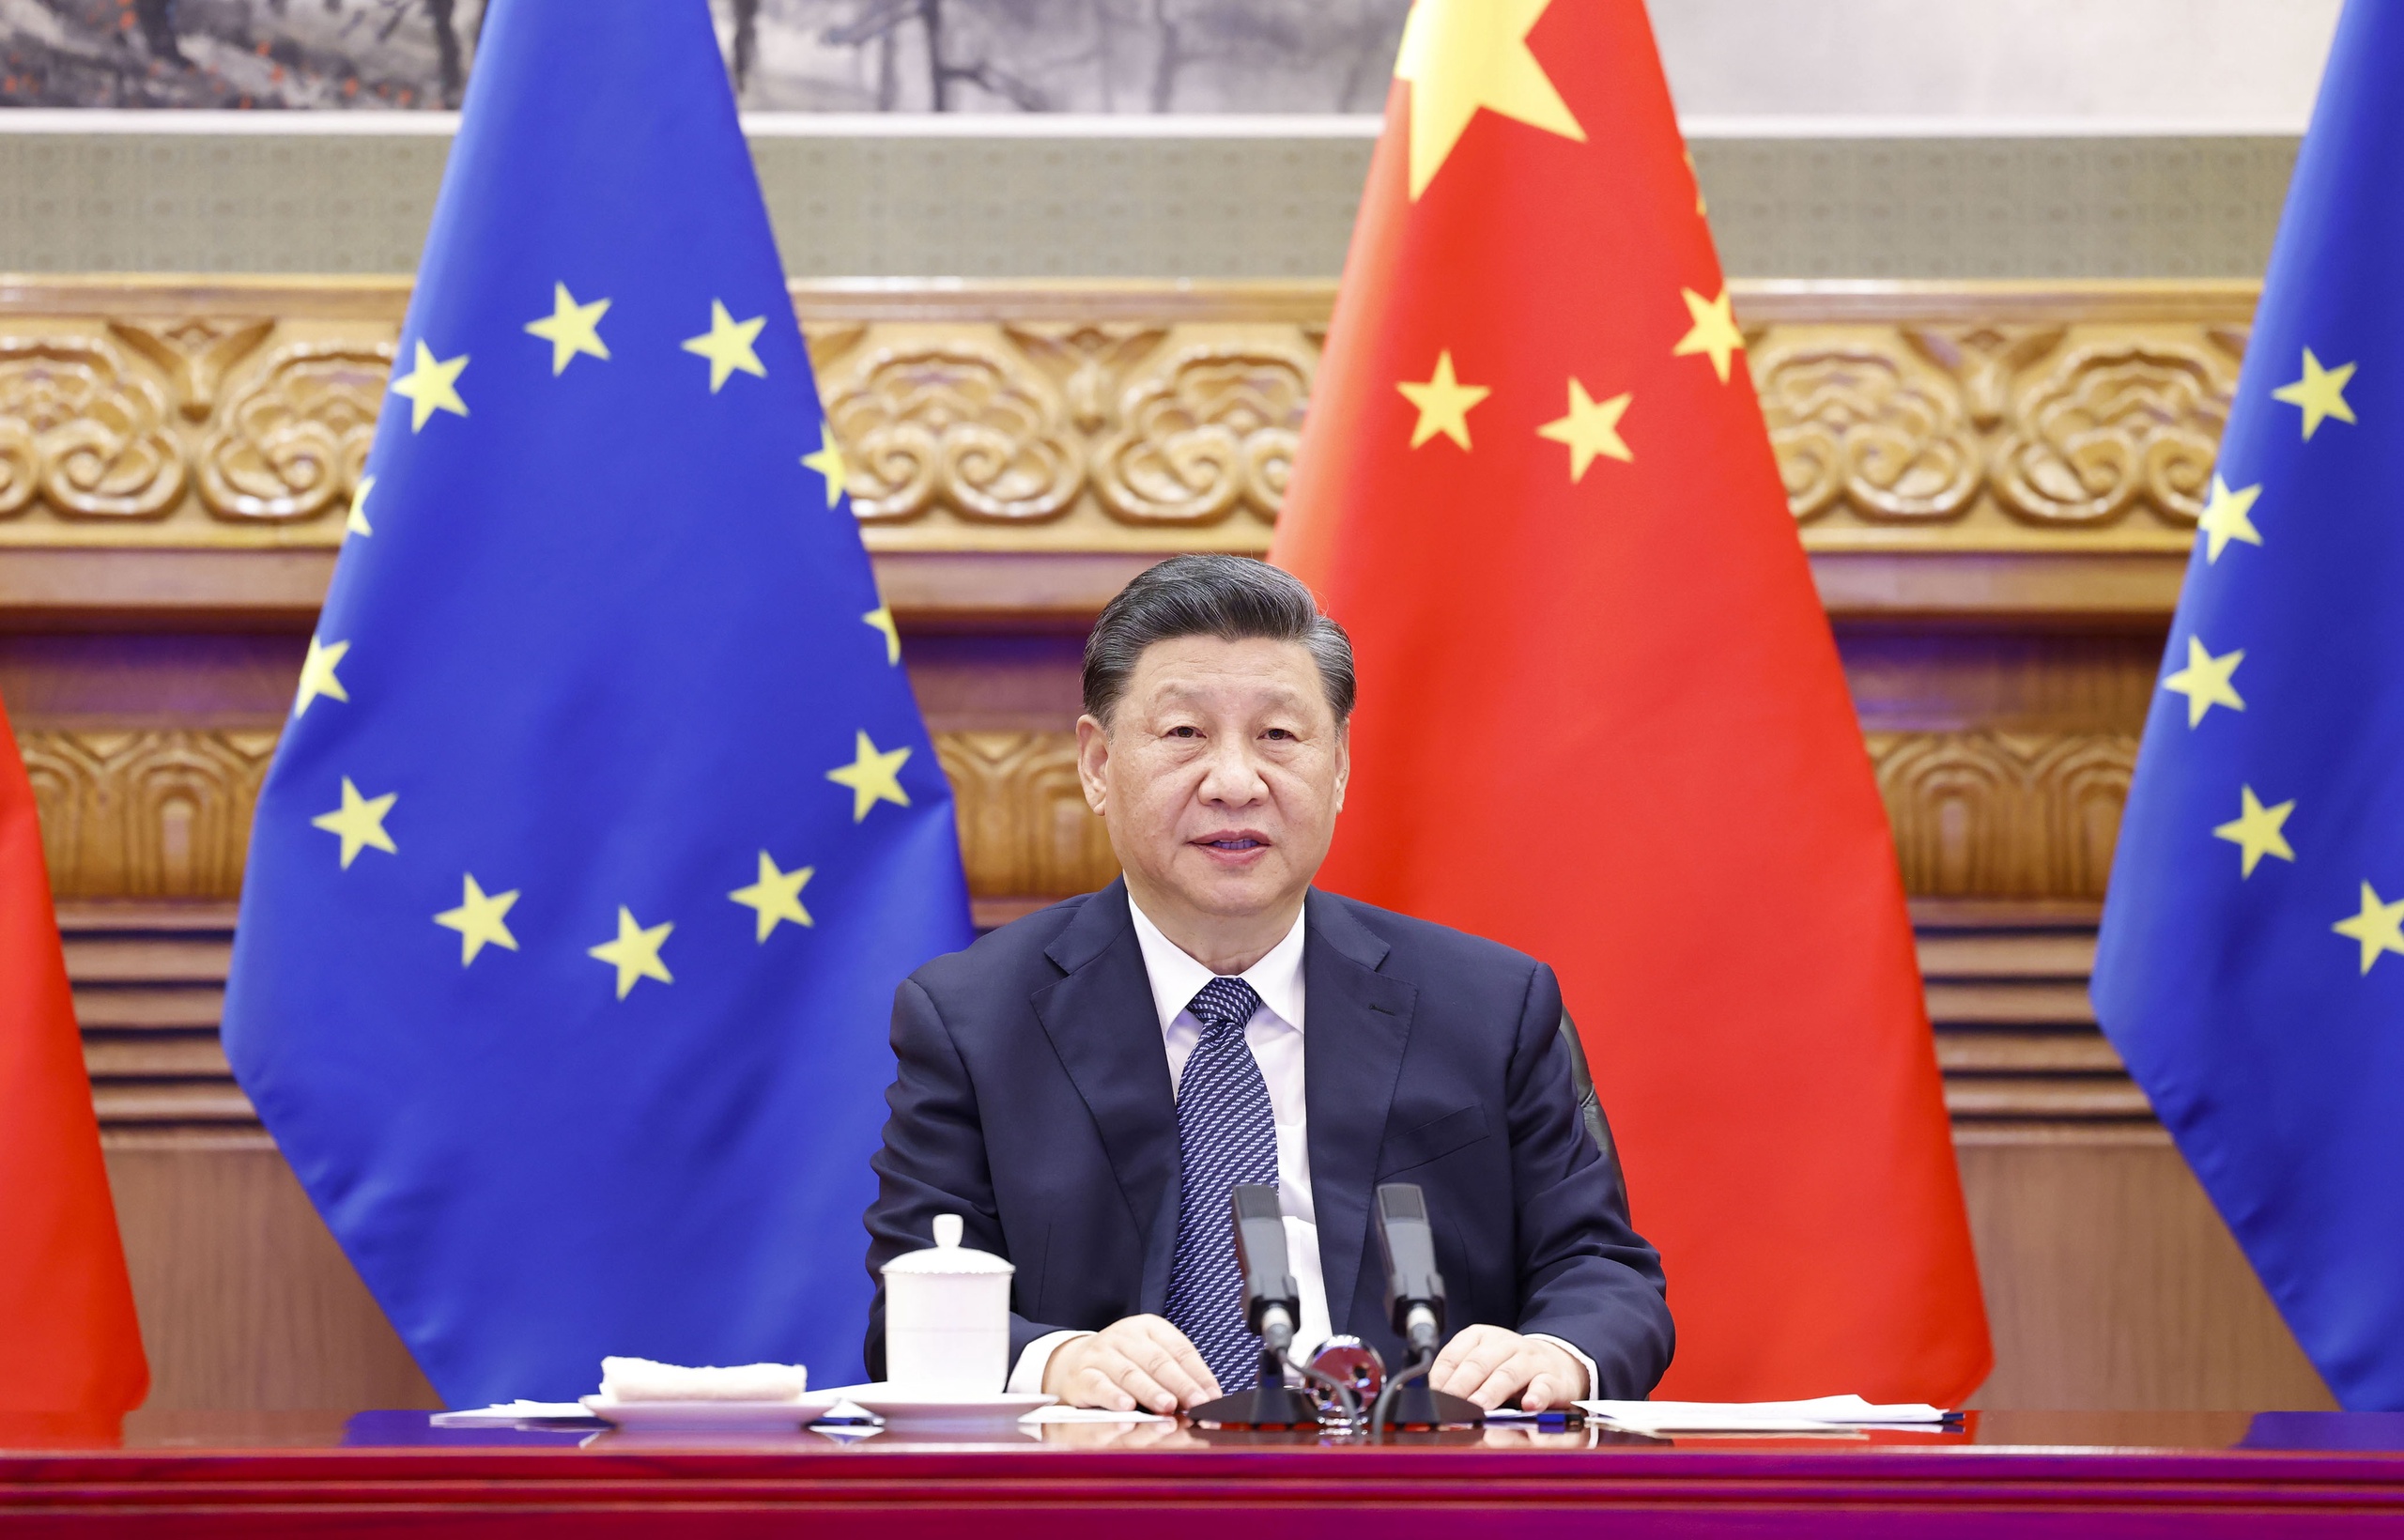 Het vizier van Brussel wordt verder gericht op China. De komende week reizen president van de Europese Commissie Ursula von der Leyen en de Franse president Emmanuel Macron af naar Beijing. Ook de Spaanse premier Sànchez is te gast bij de Chinese leider Xi Jinping. 